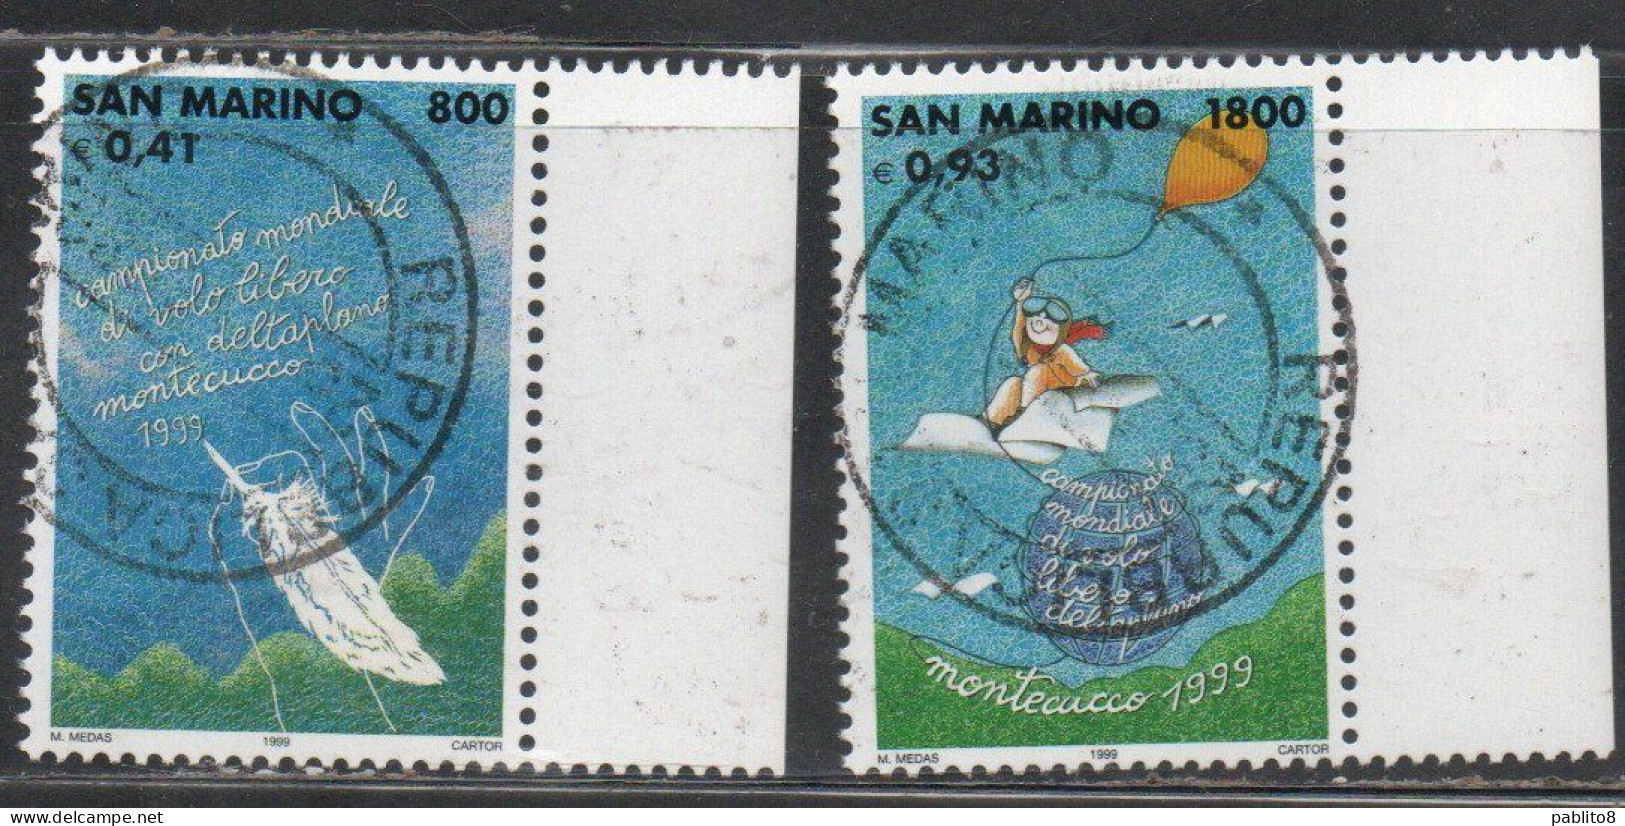 REPUBBLICA DI SAN MARINO 1999 VOLO LIBERO SERIE COMPLETA COMPLETE SET USATA USED OBLITERE' - Used Stamps